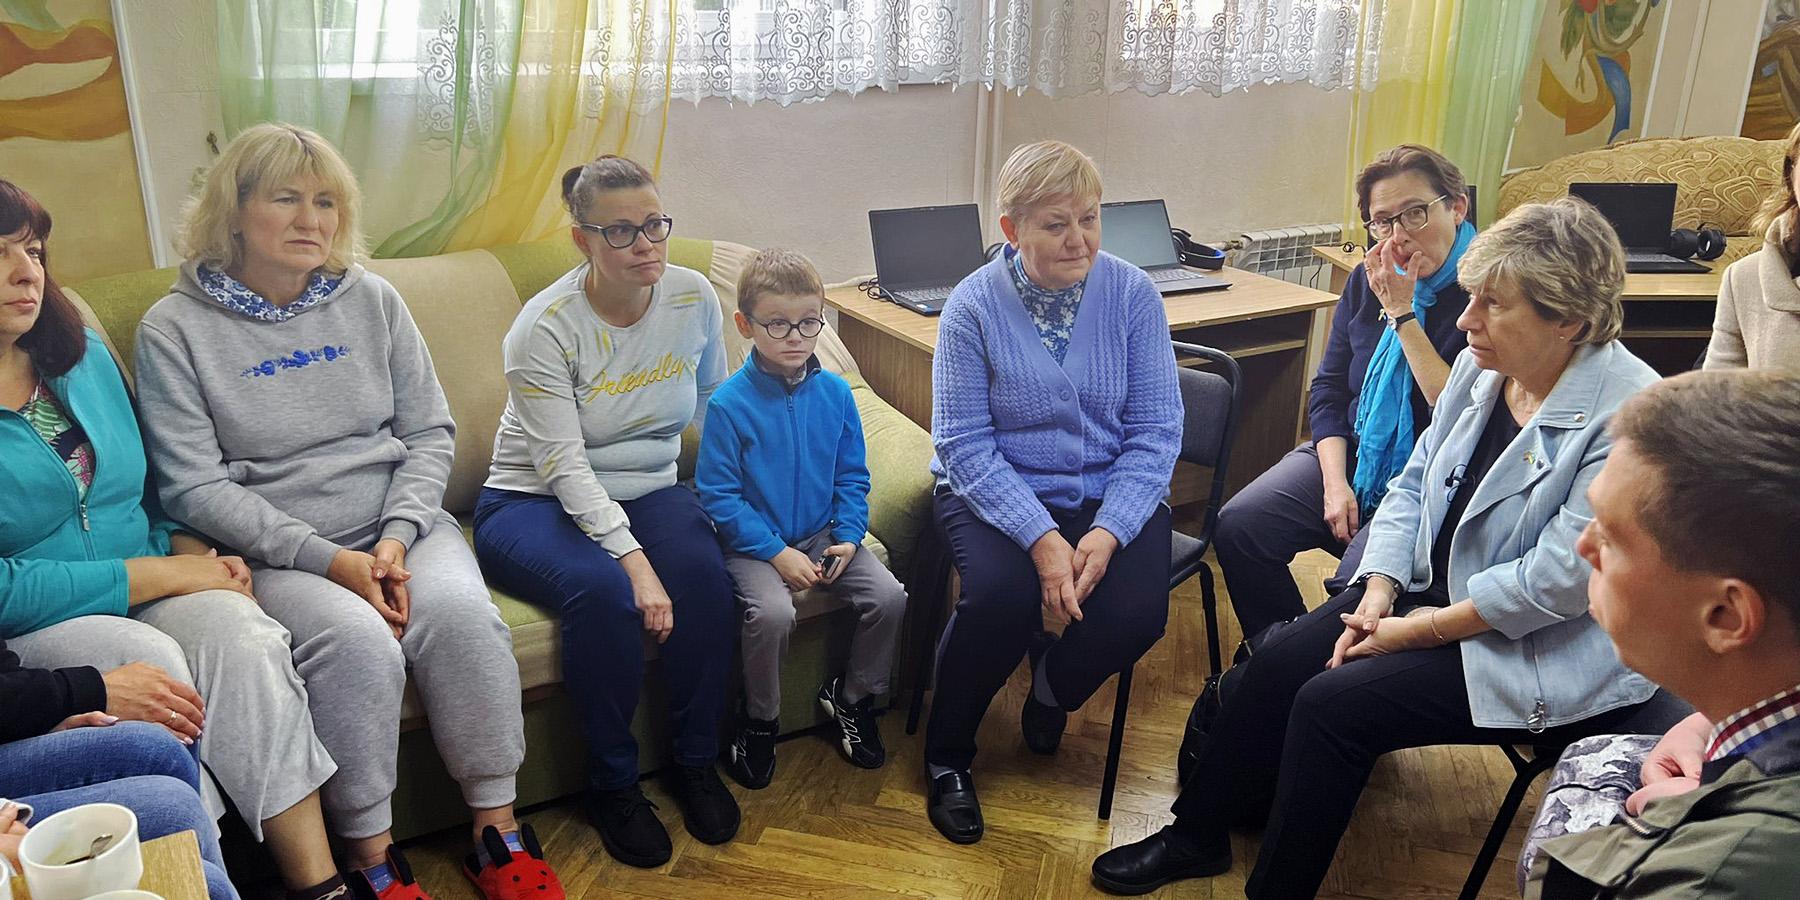 Il presidente dell'AFT Randi Weingarten incontra gli insegnanti ucraini